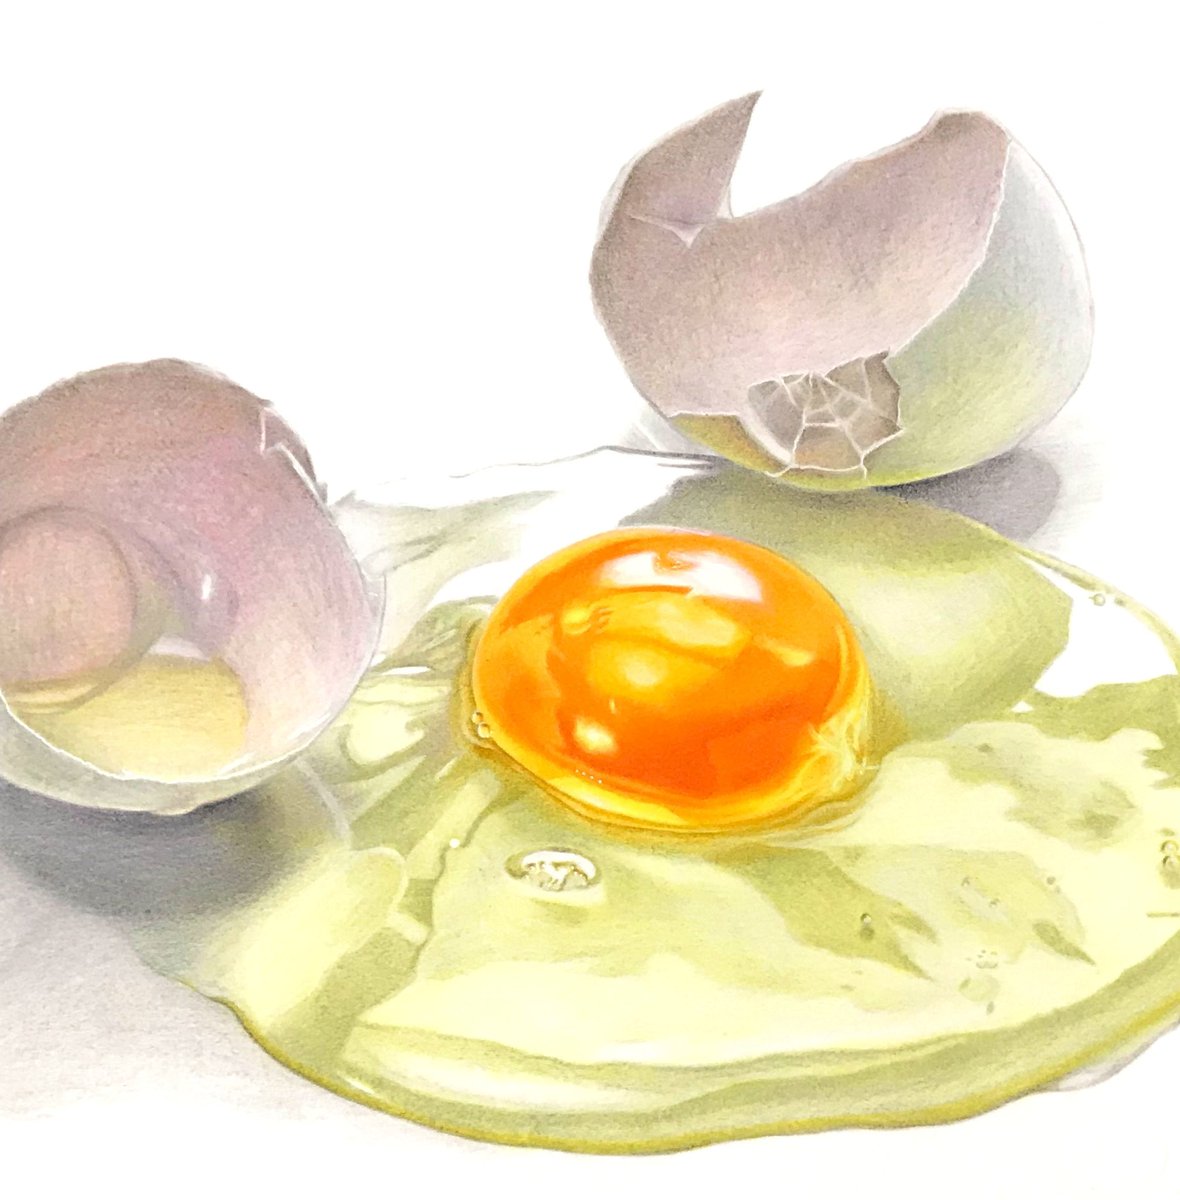 「色鉛筆で描いた生卵

#色鉛筆画 #イラスト 」|ぼんぼんのイラスト